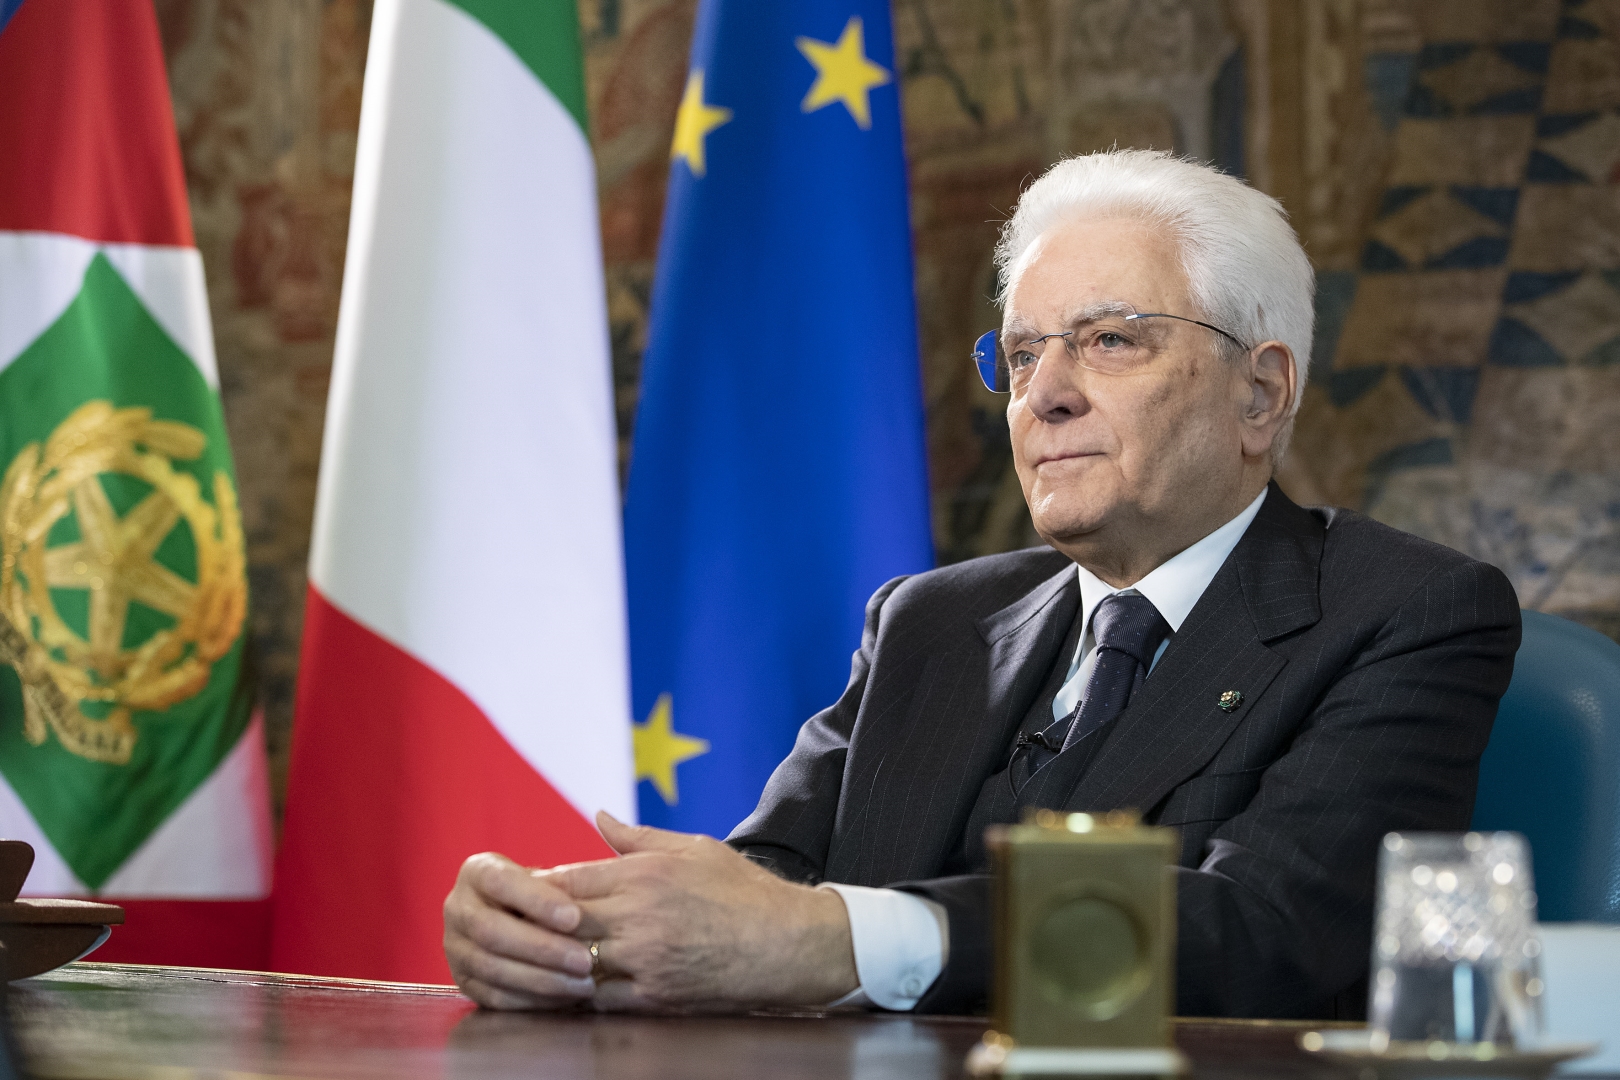 Mattarella loda accoglienza, ora scelte concrete Italia-Europa